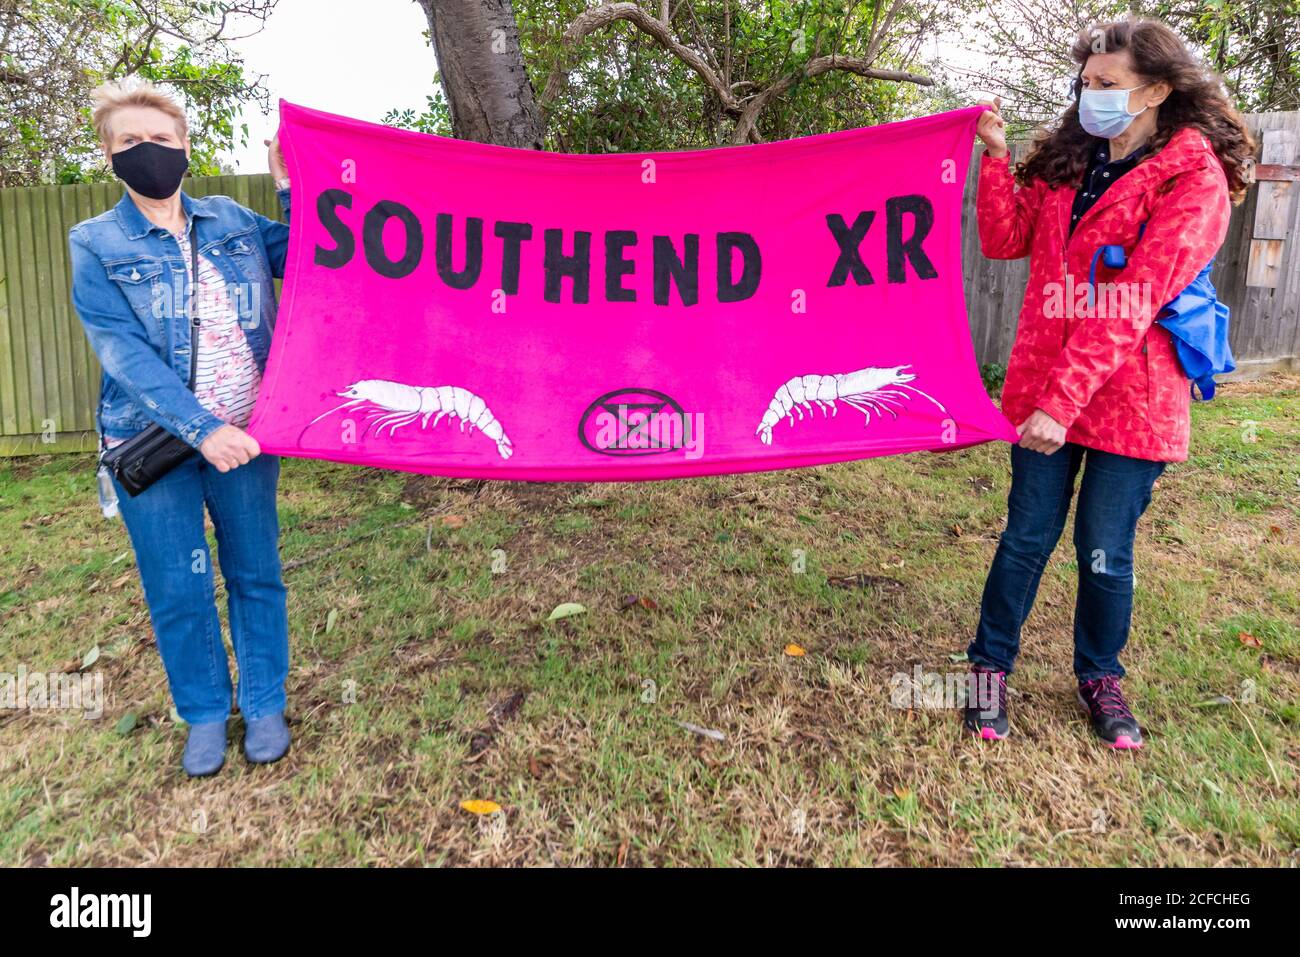 Extinction Rebellion Southend Zweigstelle, XR, protestiert am Flughafen gegen Flugreisen. Zwei maskierte Frauen halten Banner mit Garnelen-Symbole Stockfoto